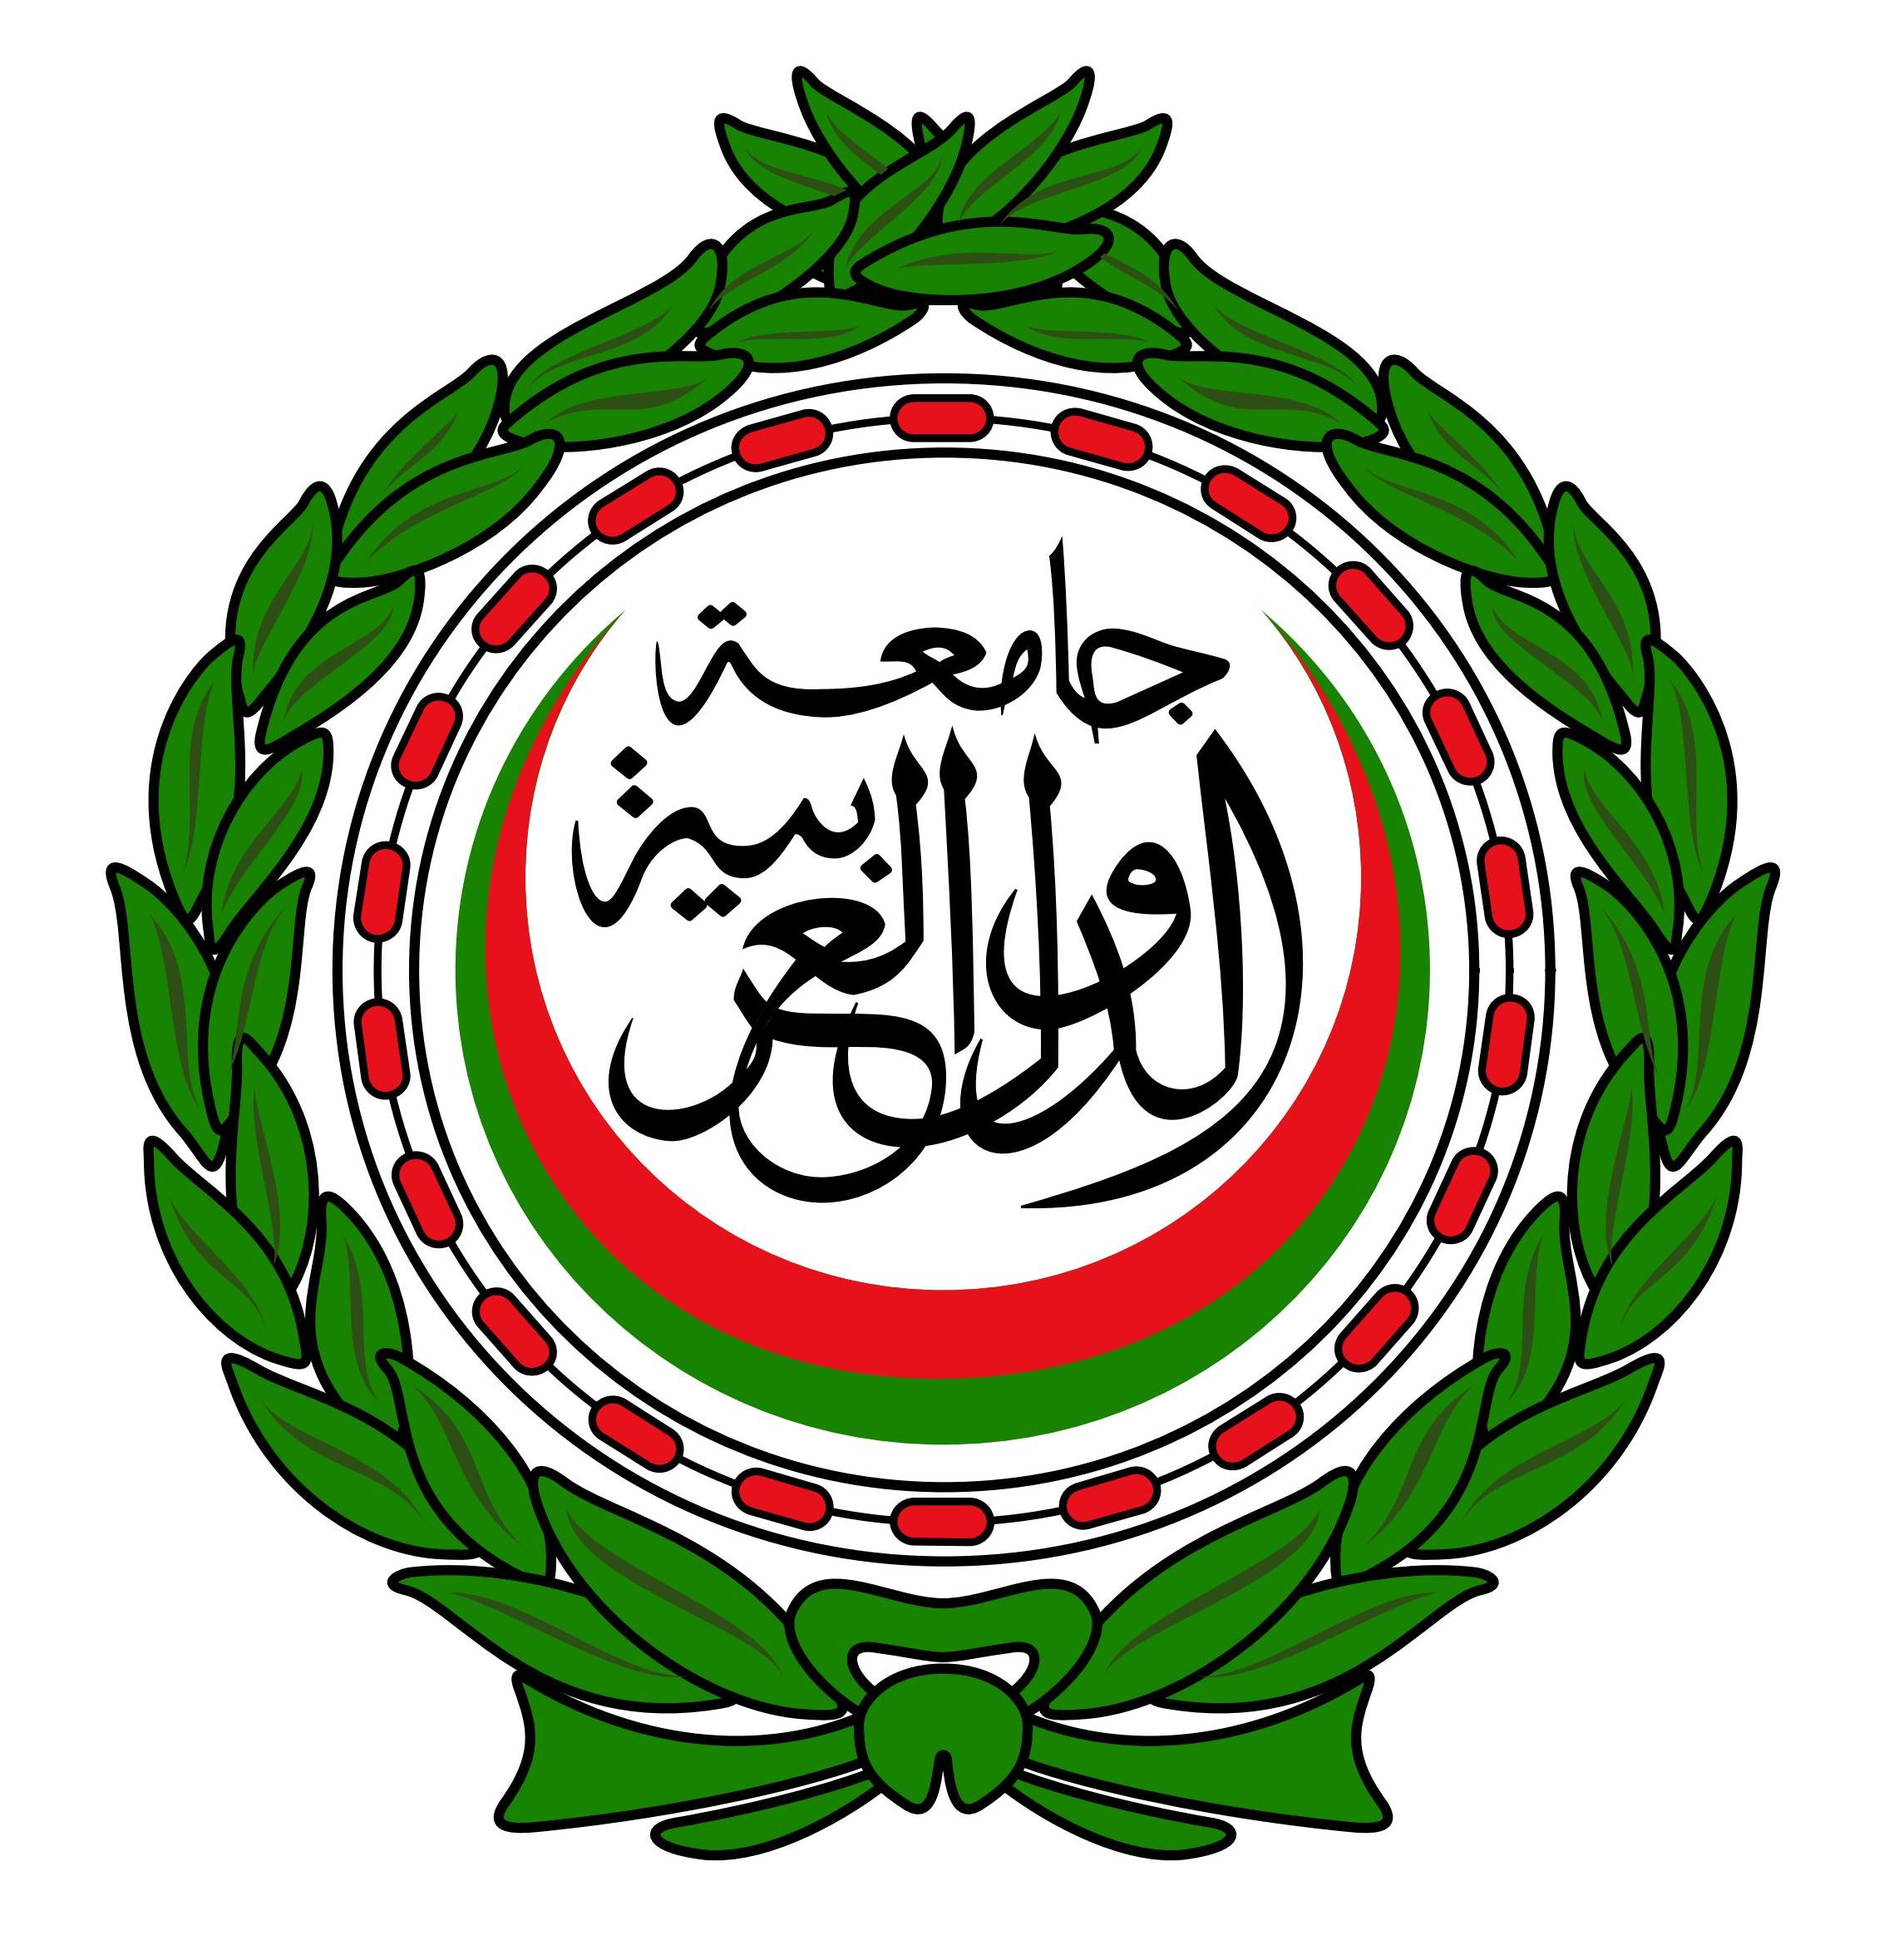 Arab league 2